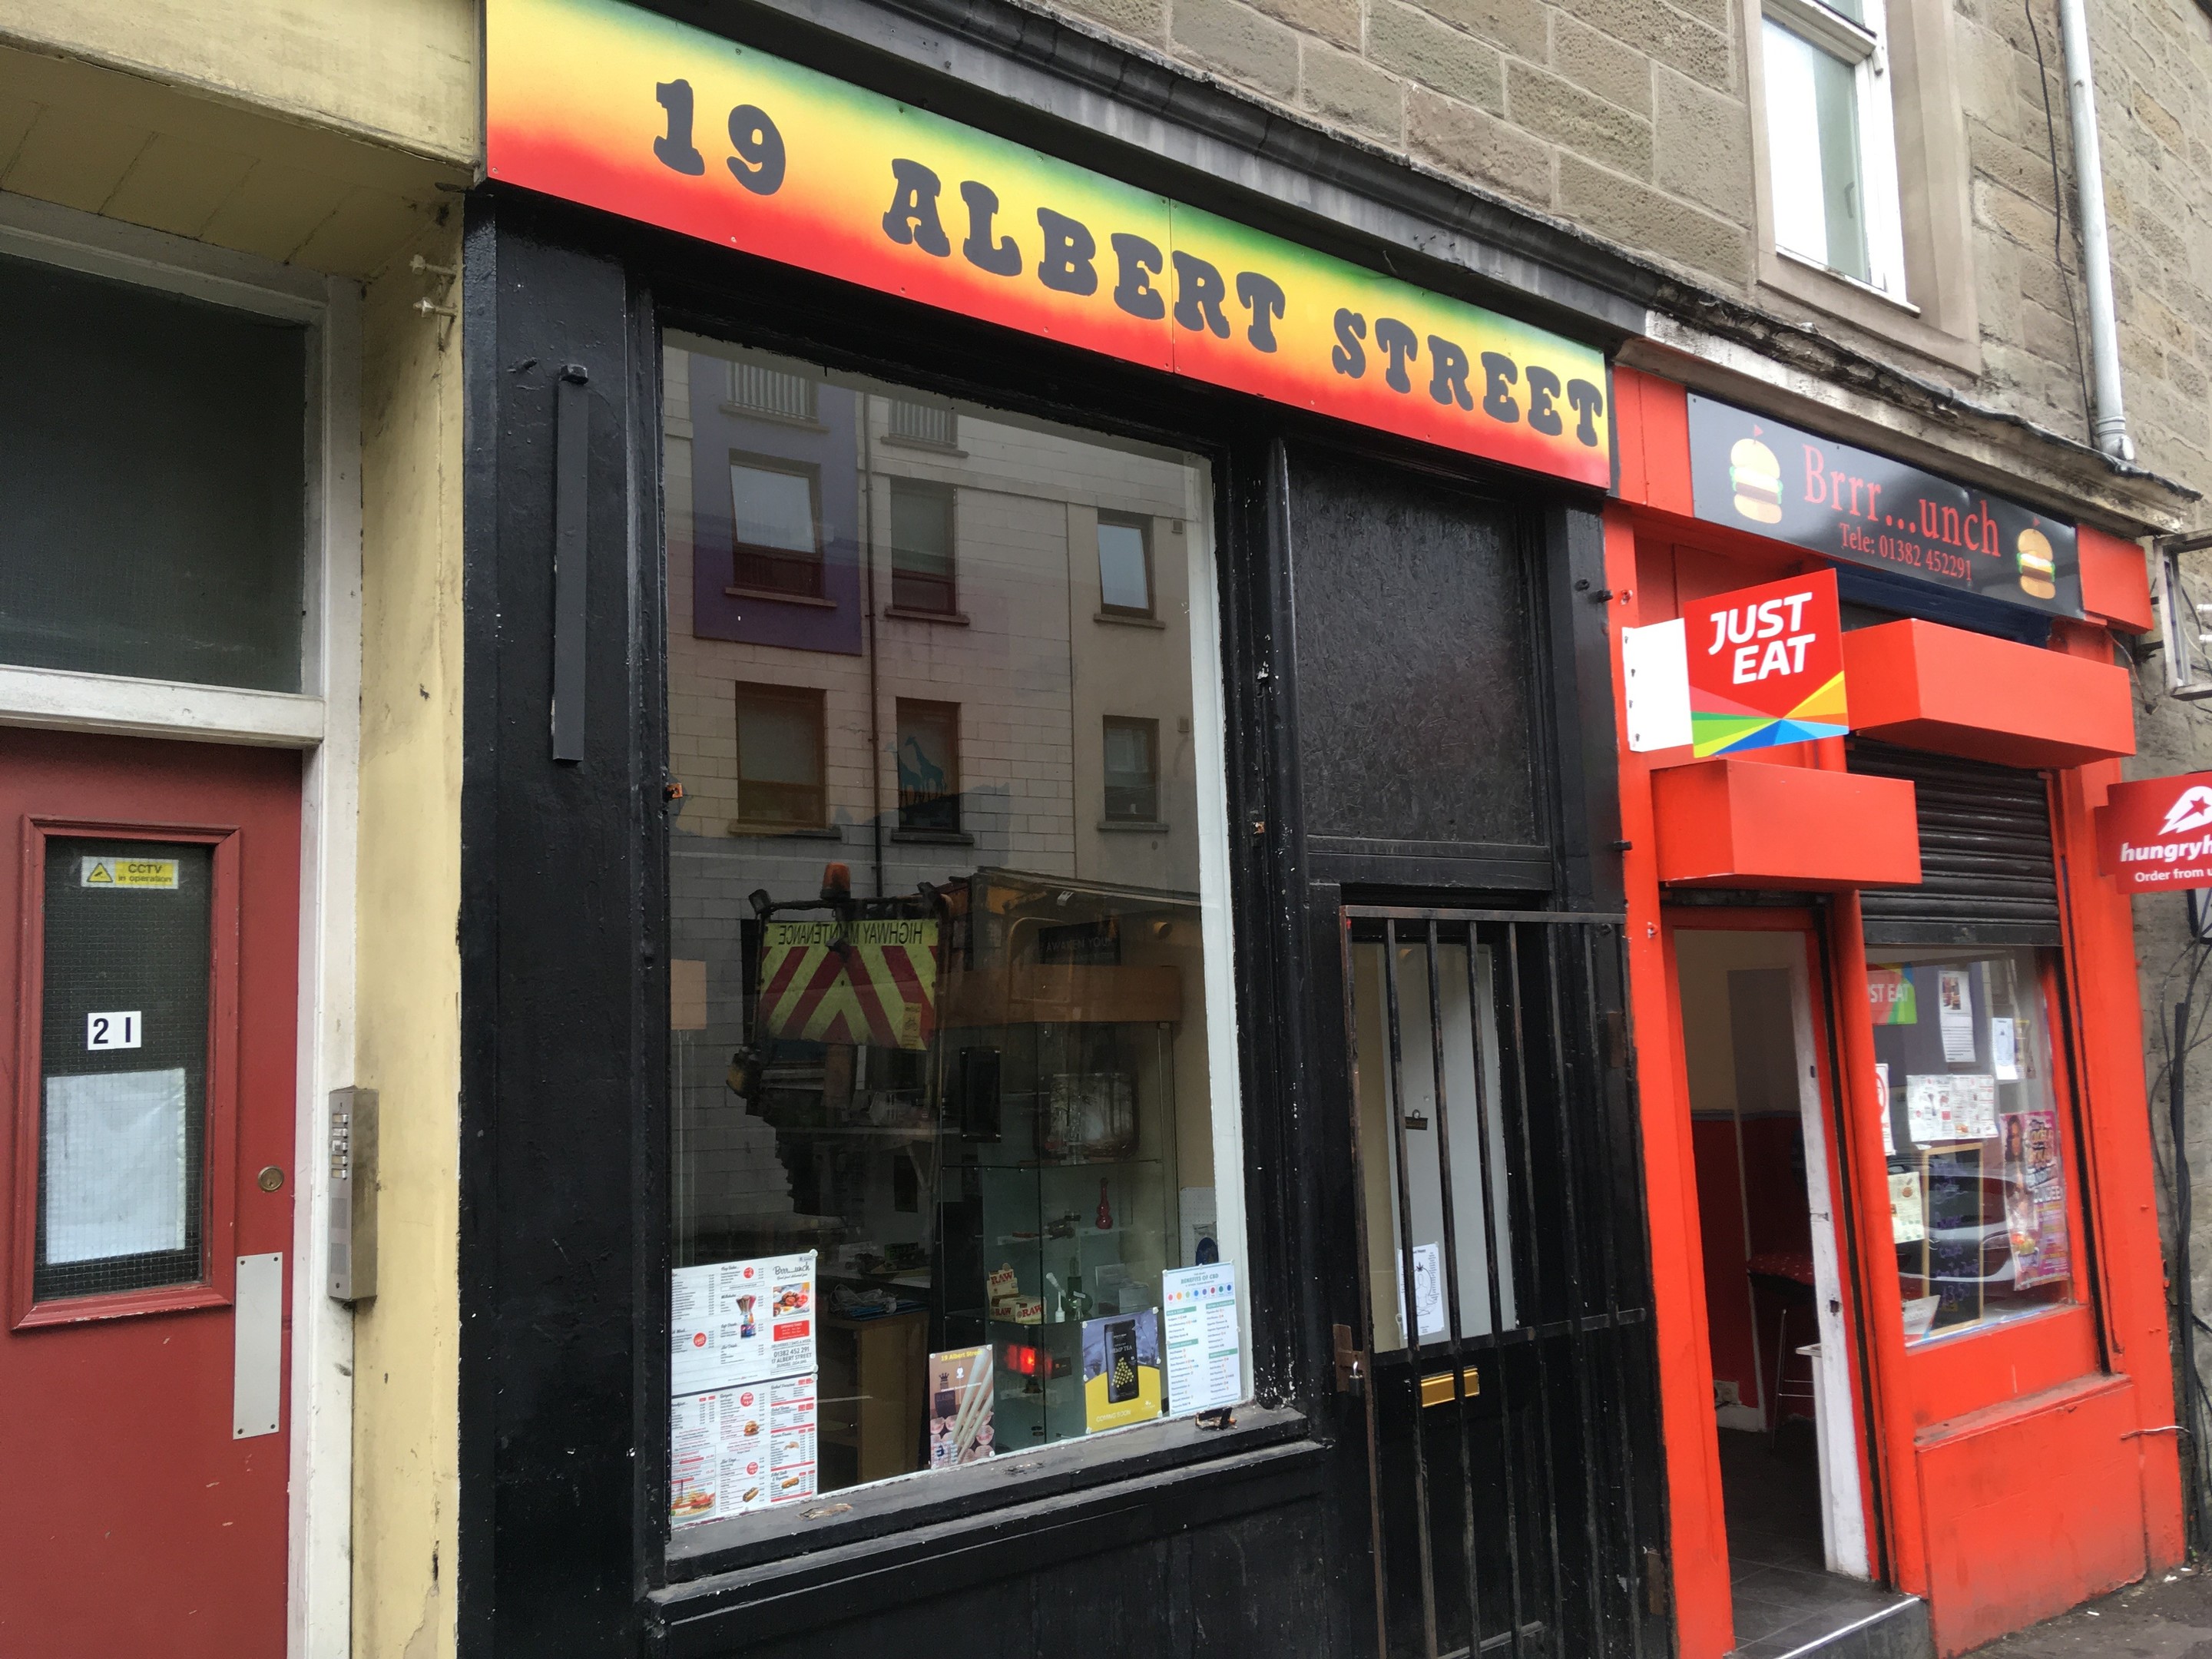 19 Albert Street.